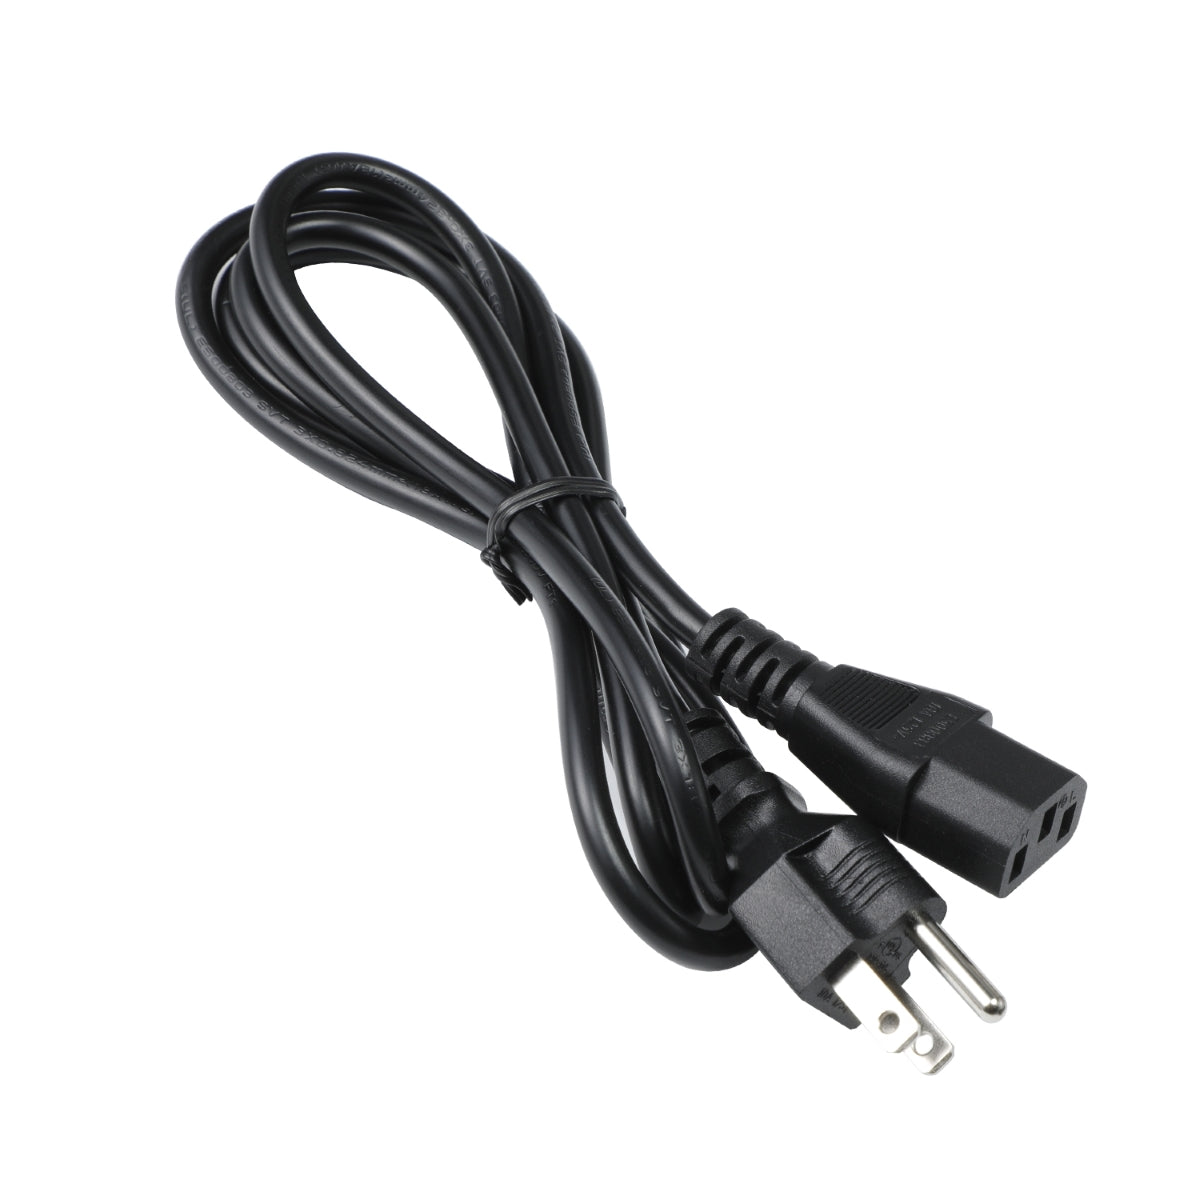 Power Cord for Dell U2421E Monitor